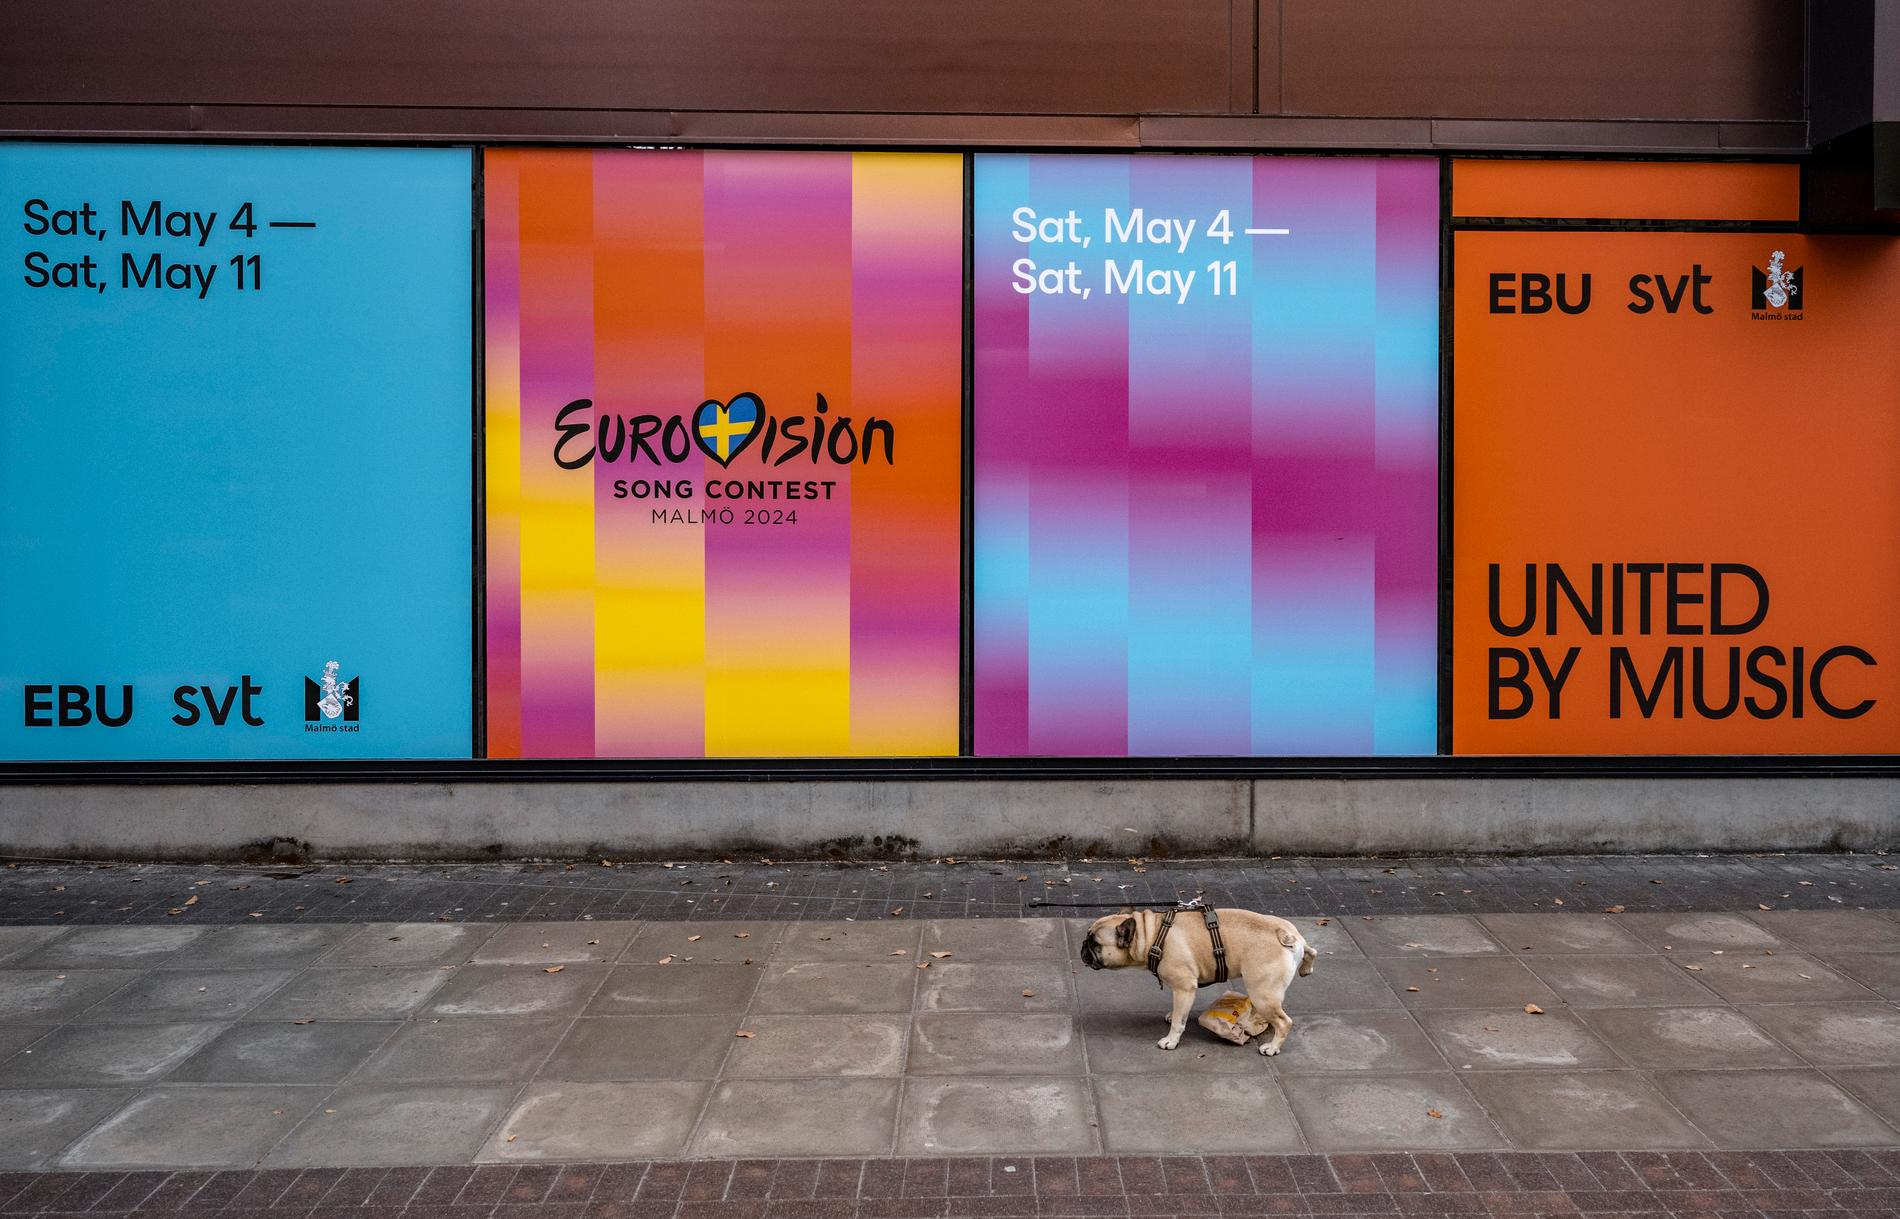 Reklam för Eurovision Song Contest (ESC) på fasaden på Malmö Arena i Hyllie.